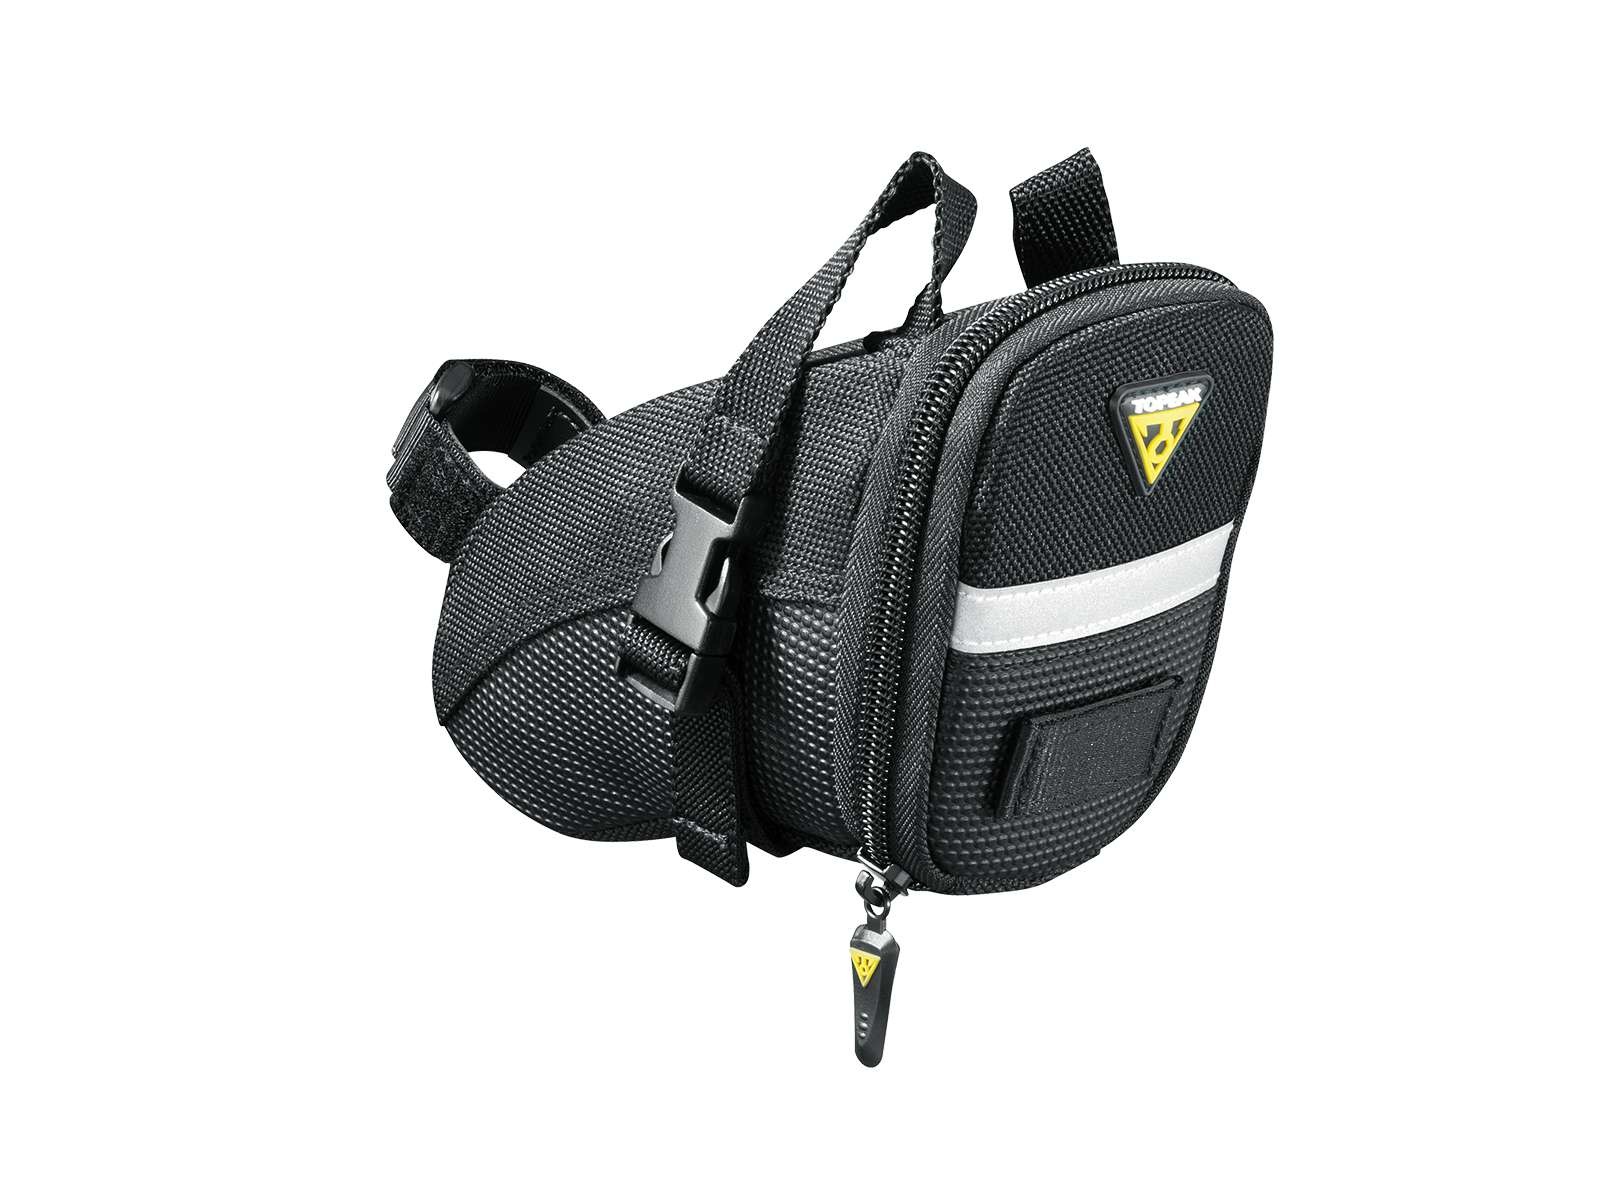 Topeak Aero small seat bag with straps